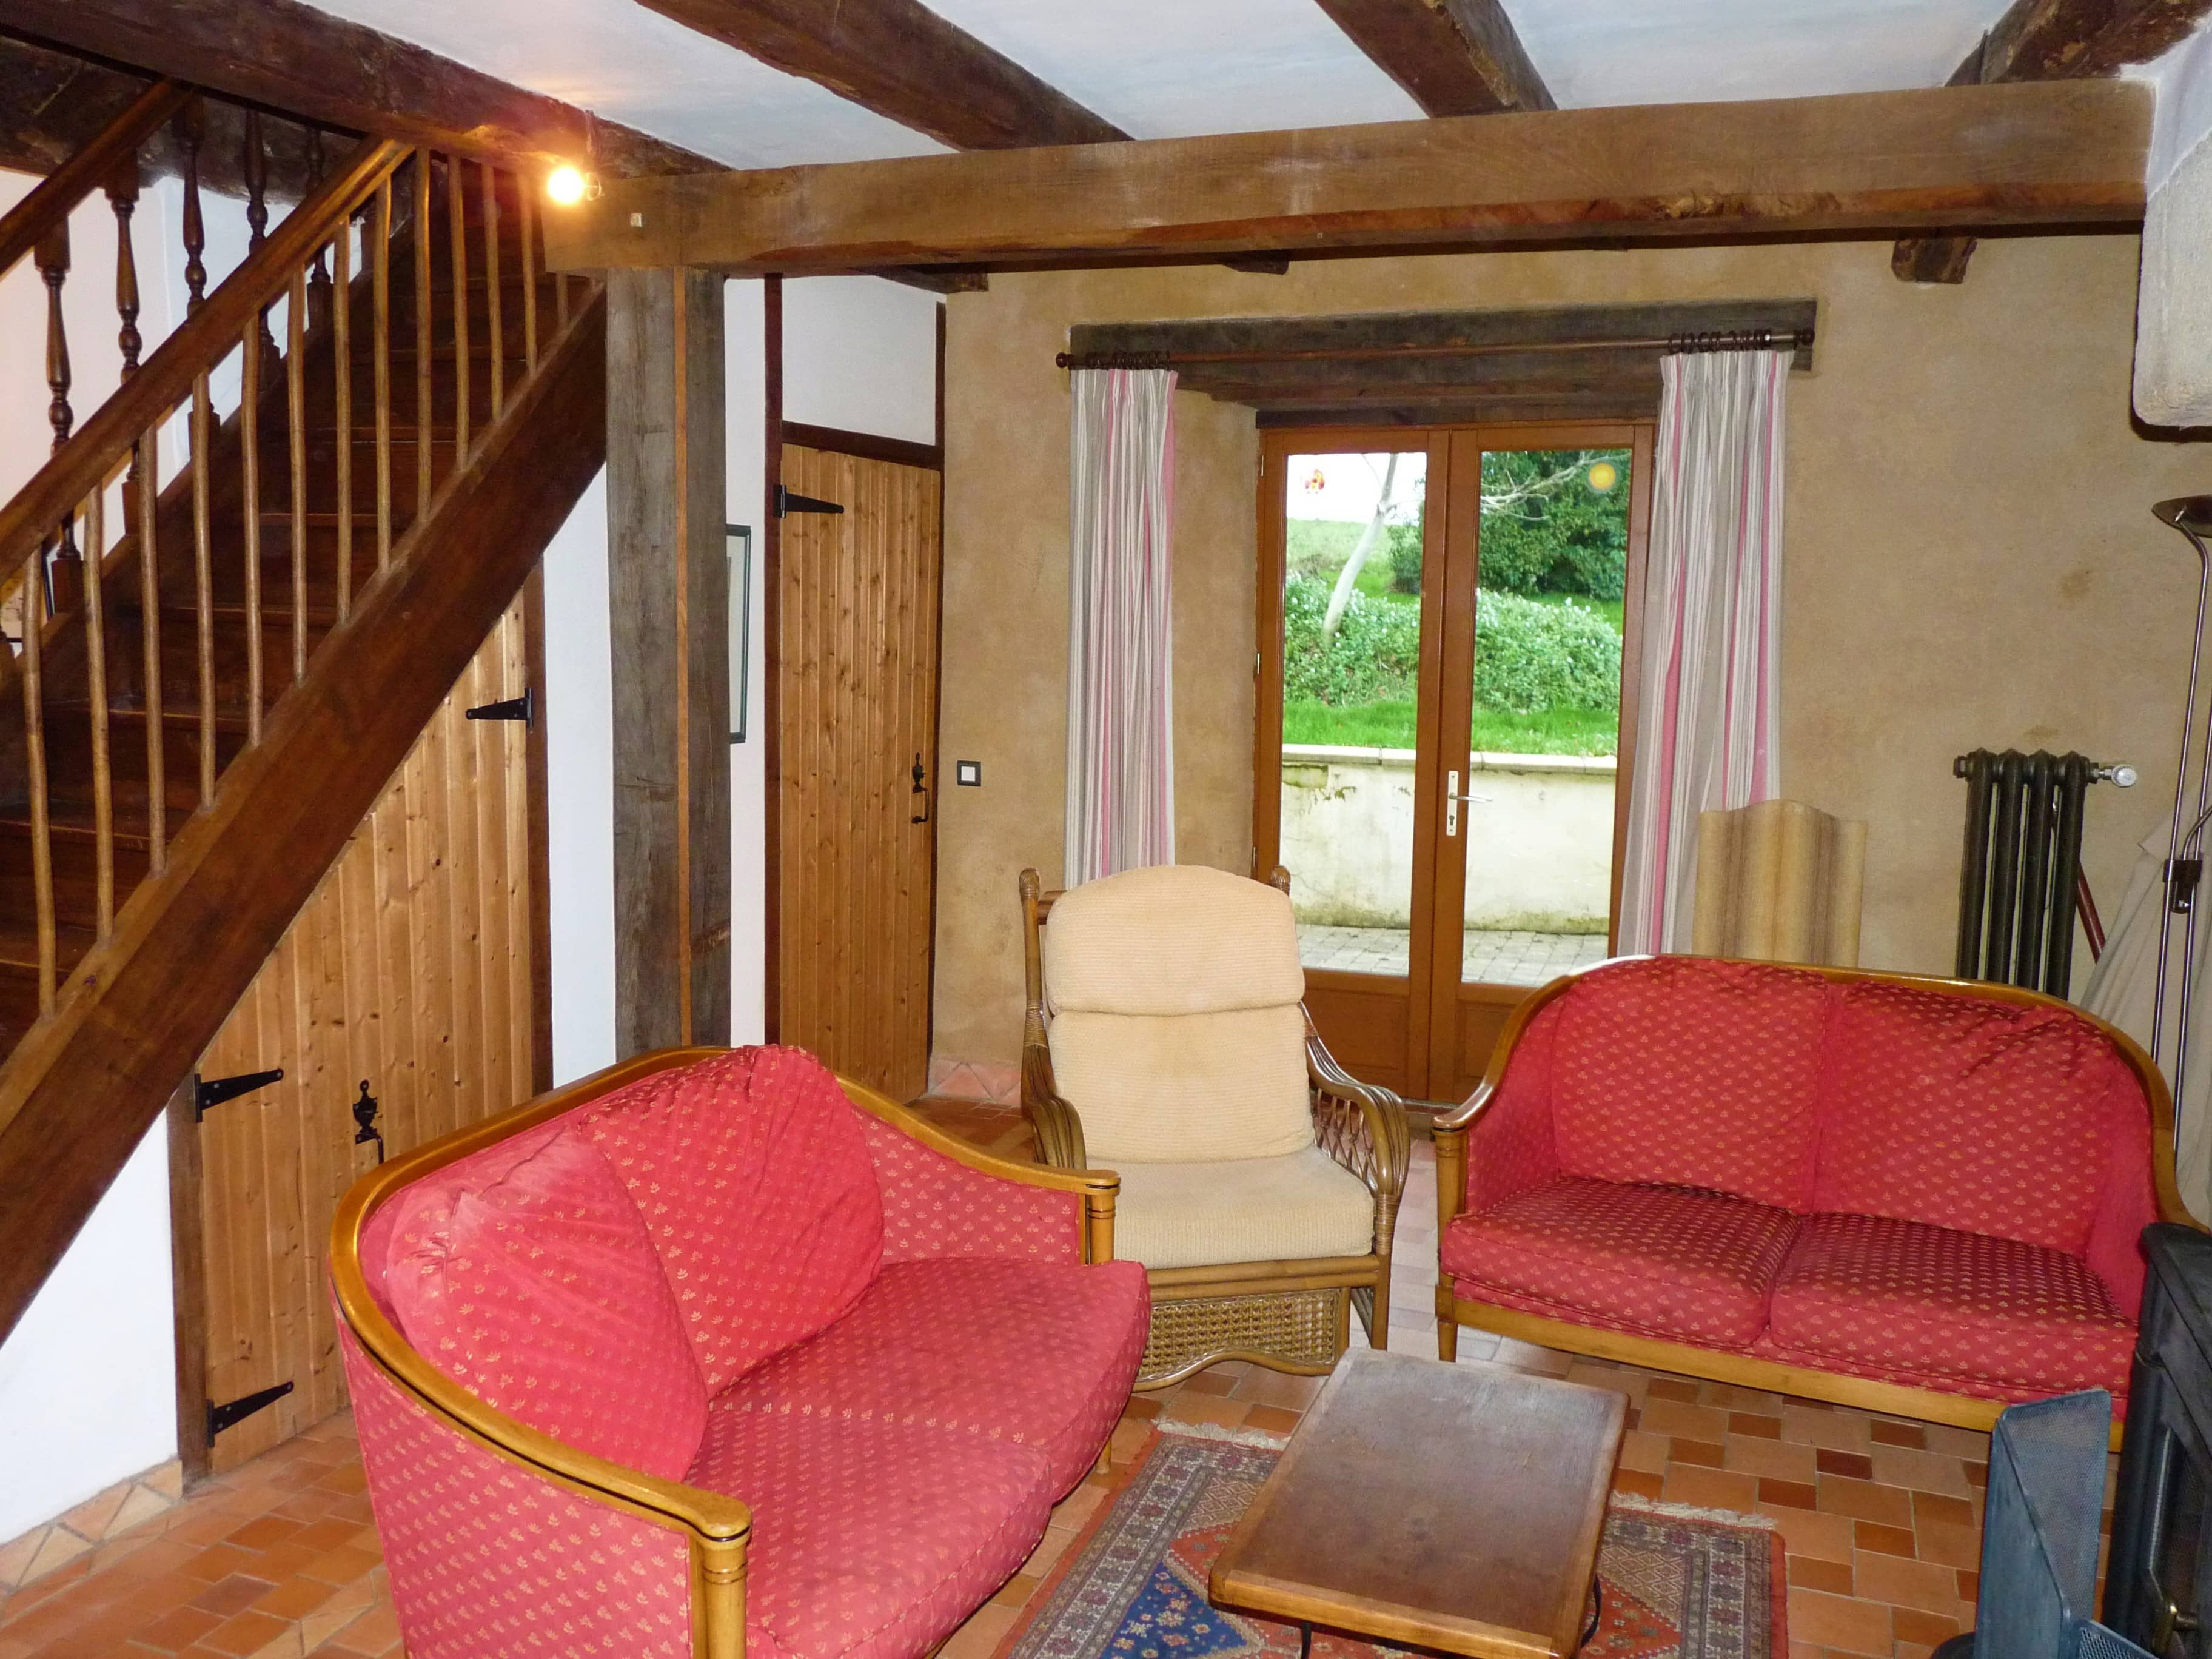 Confortable salon du gîte La Julerie en Bretagne, France, offrant une vue sur la nature environnante et équipé de meubles modernes. Idéal pour se détendre après une journée de visite en Bretagne.